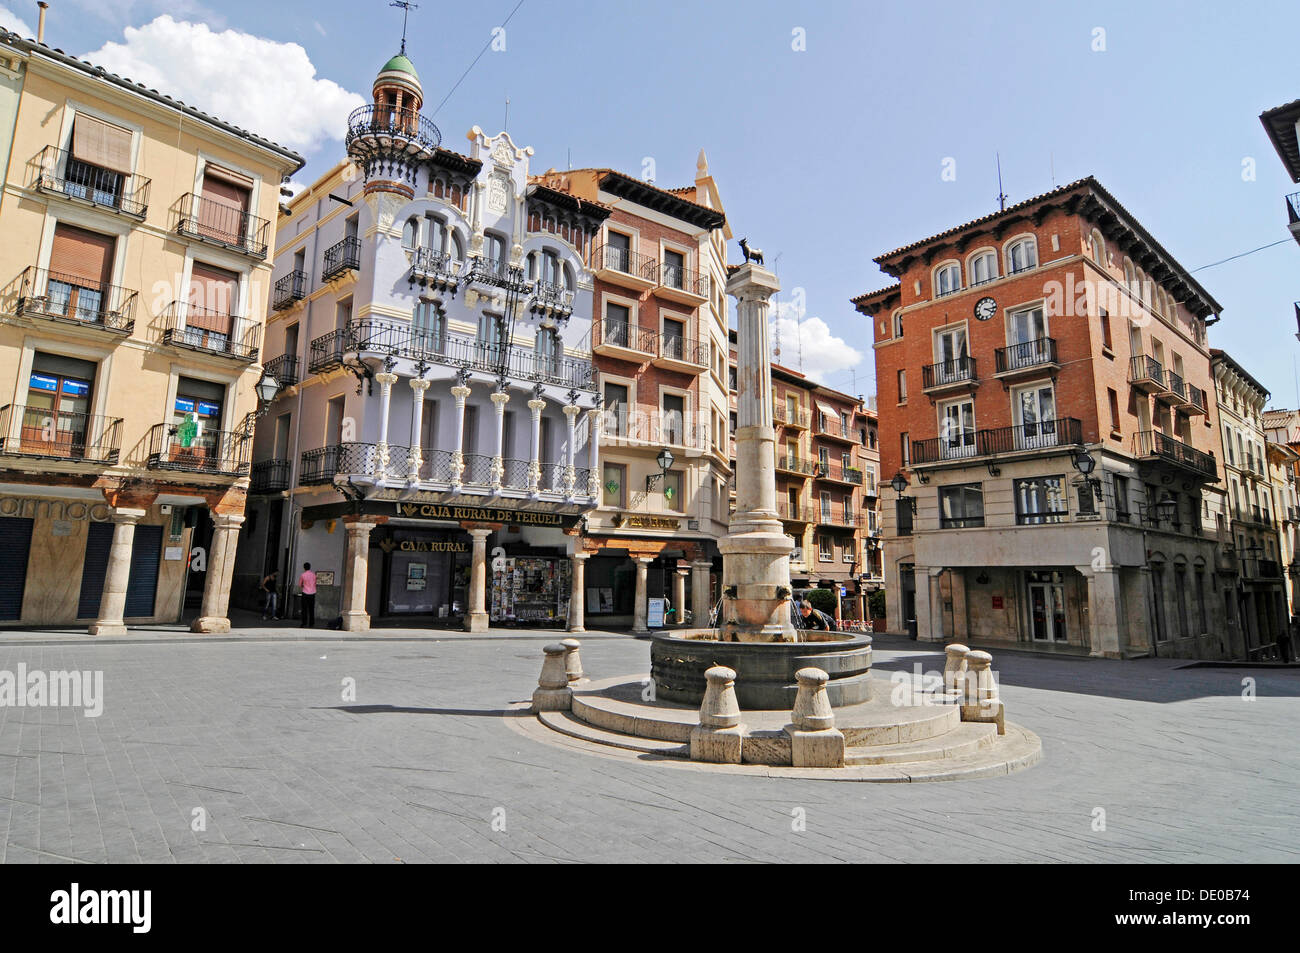 Fountain in Plaza de Carlos Castel or Plaza del Torico, Teruel, Aragon, Spain, Europe, PublicGround Stock Photo